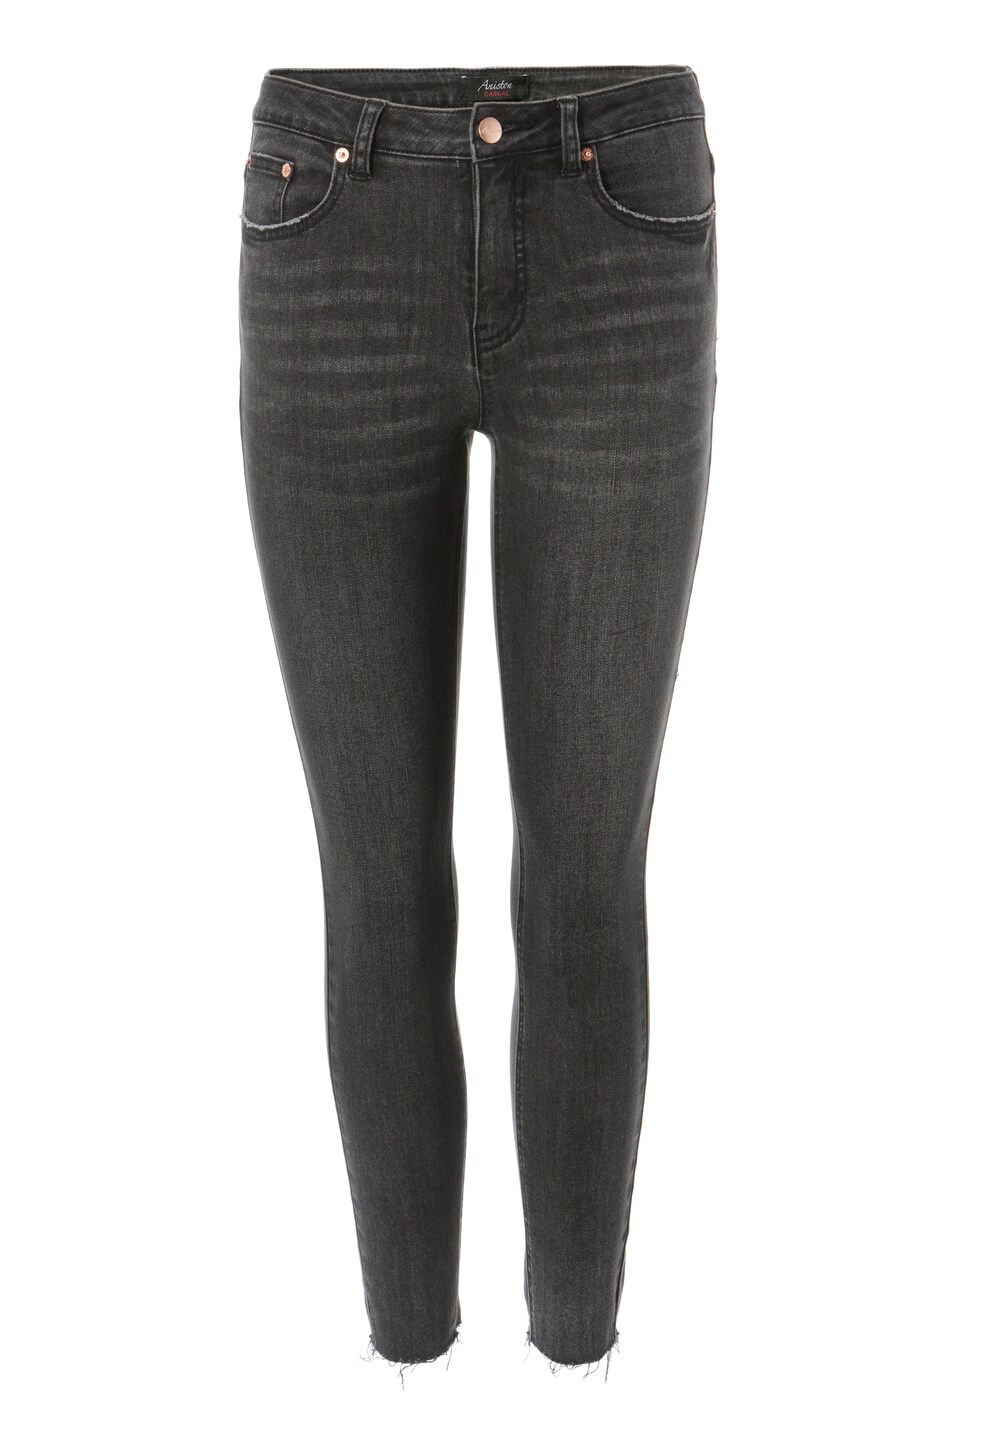 Узкие джинсы Aniston Casual, черный